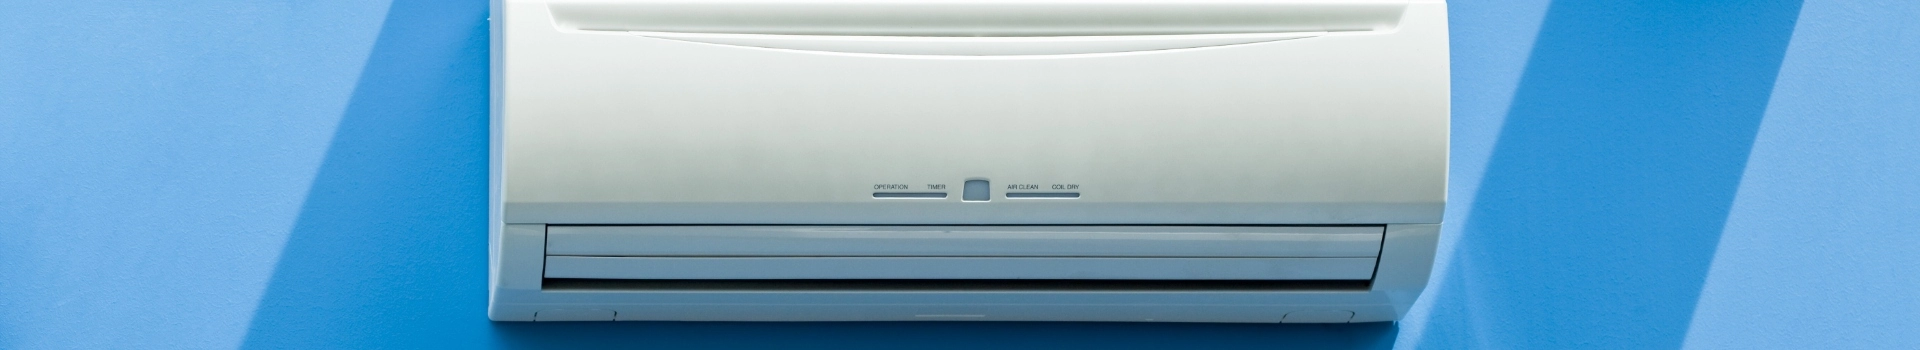 panel klimatyzatora na niebieskiej ścianie